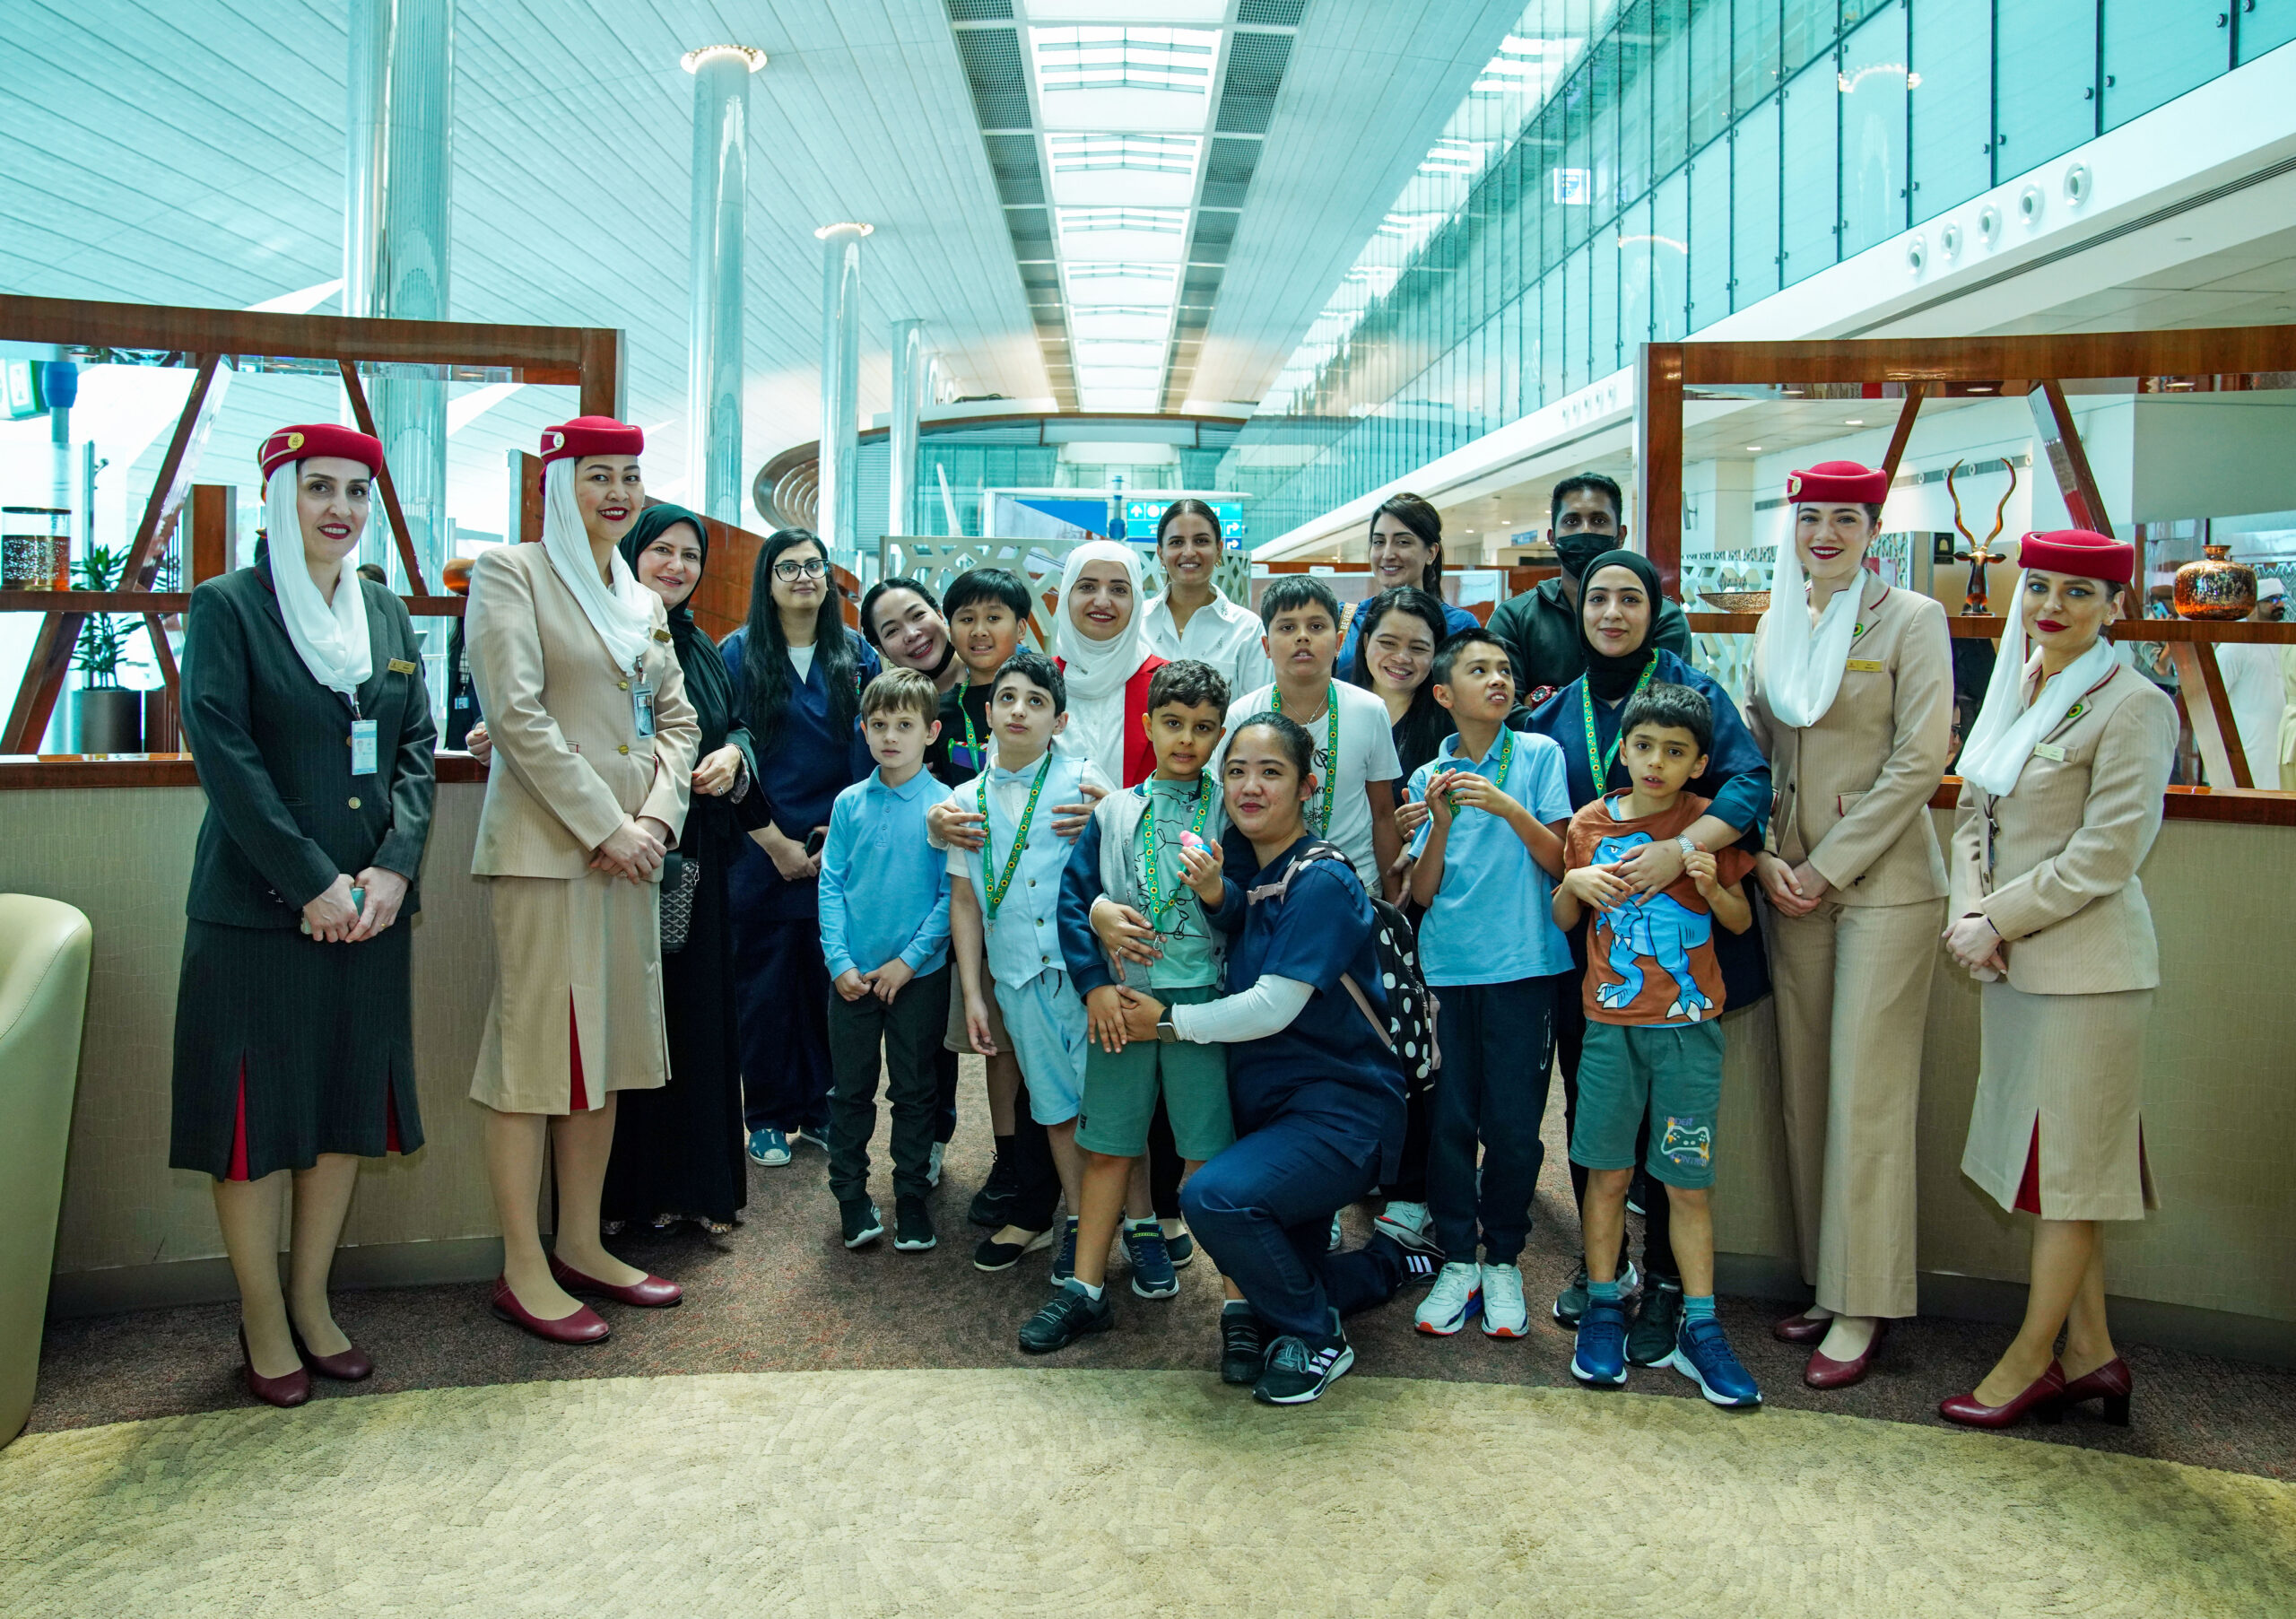 Emirates organisiert Einführungsflug und Flughafen-Rundgang für Kinder mit Autismus.